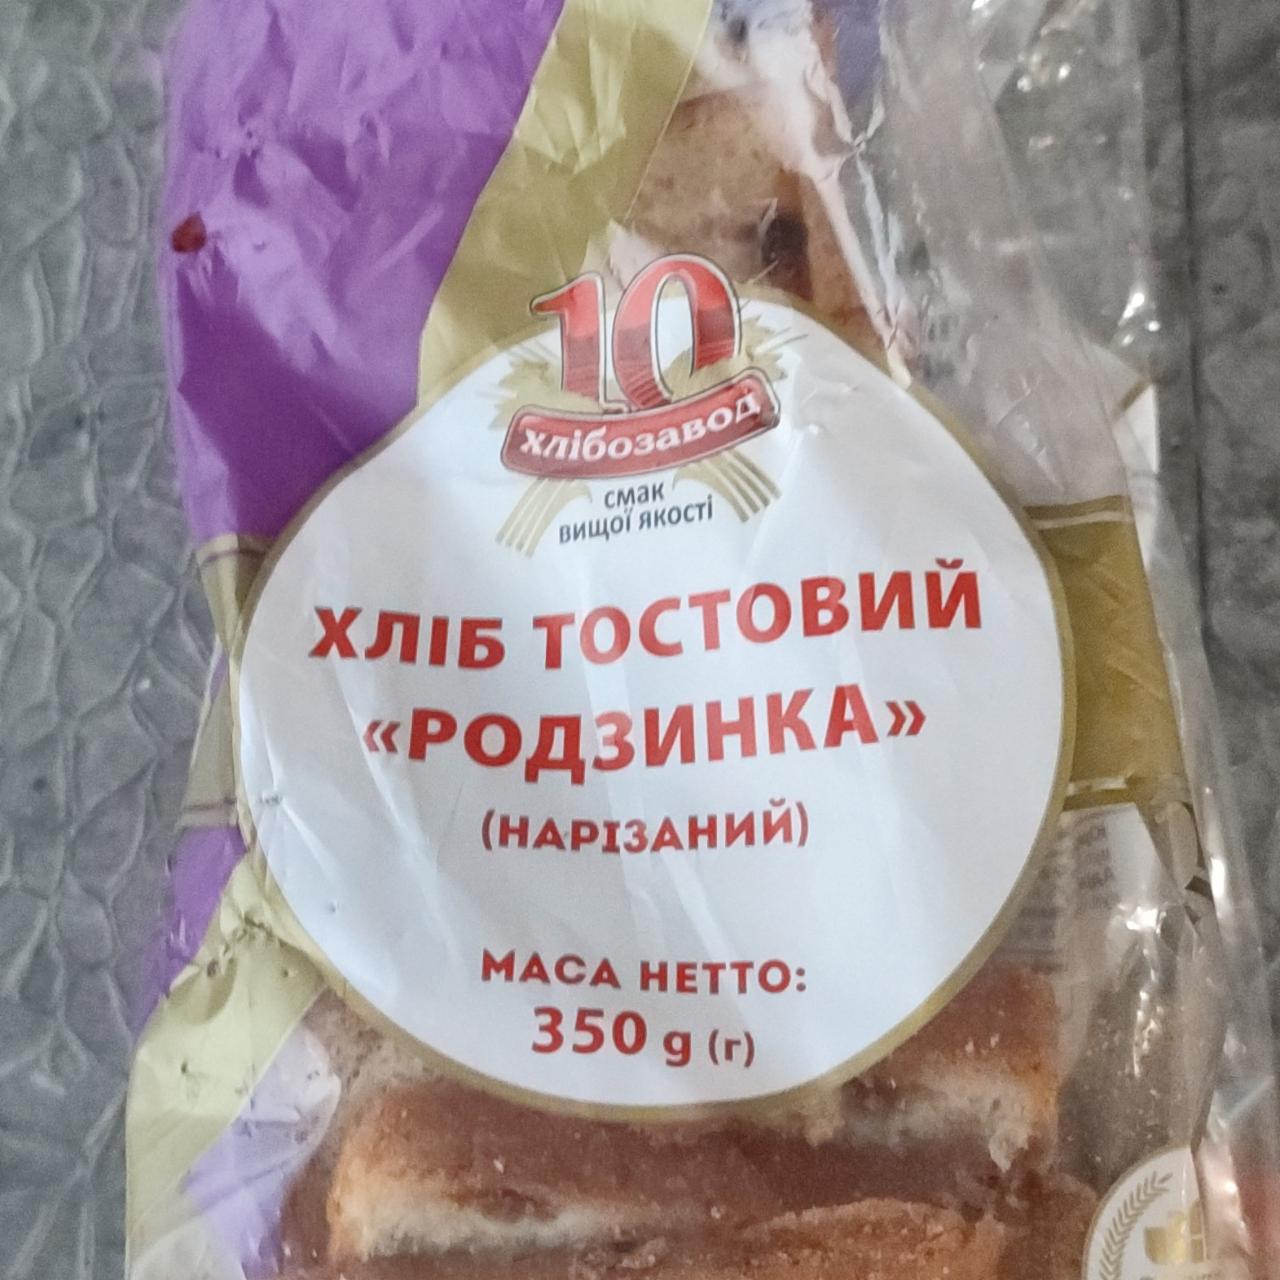 Фото - Хлеб тостовый родзинка нарезанный 10 хлібозавод